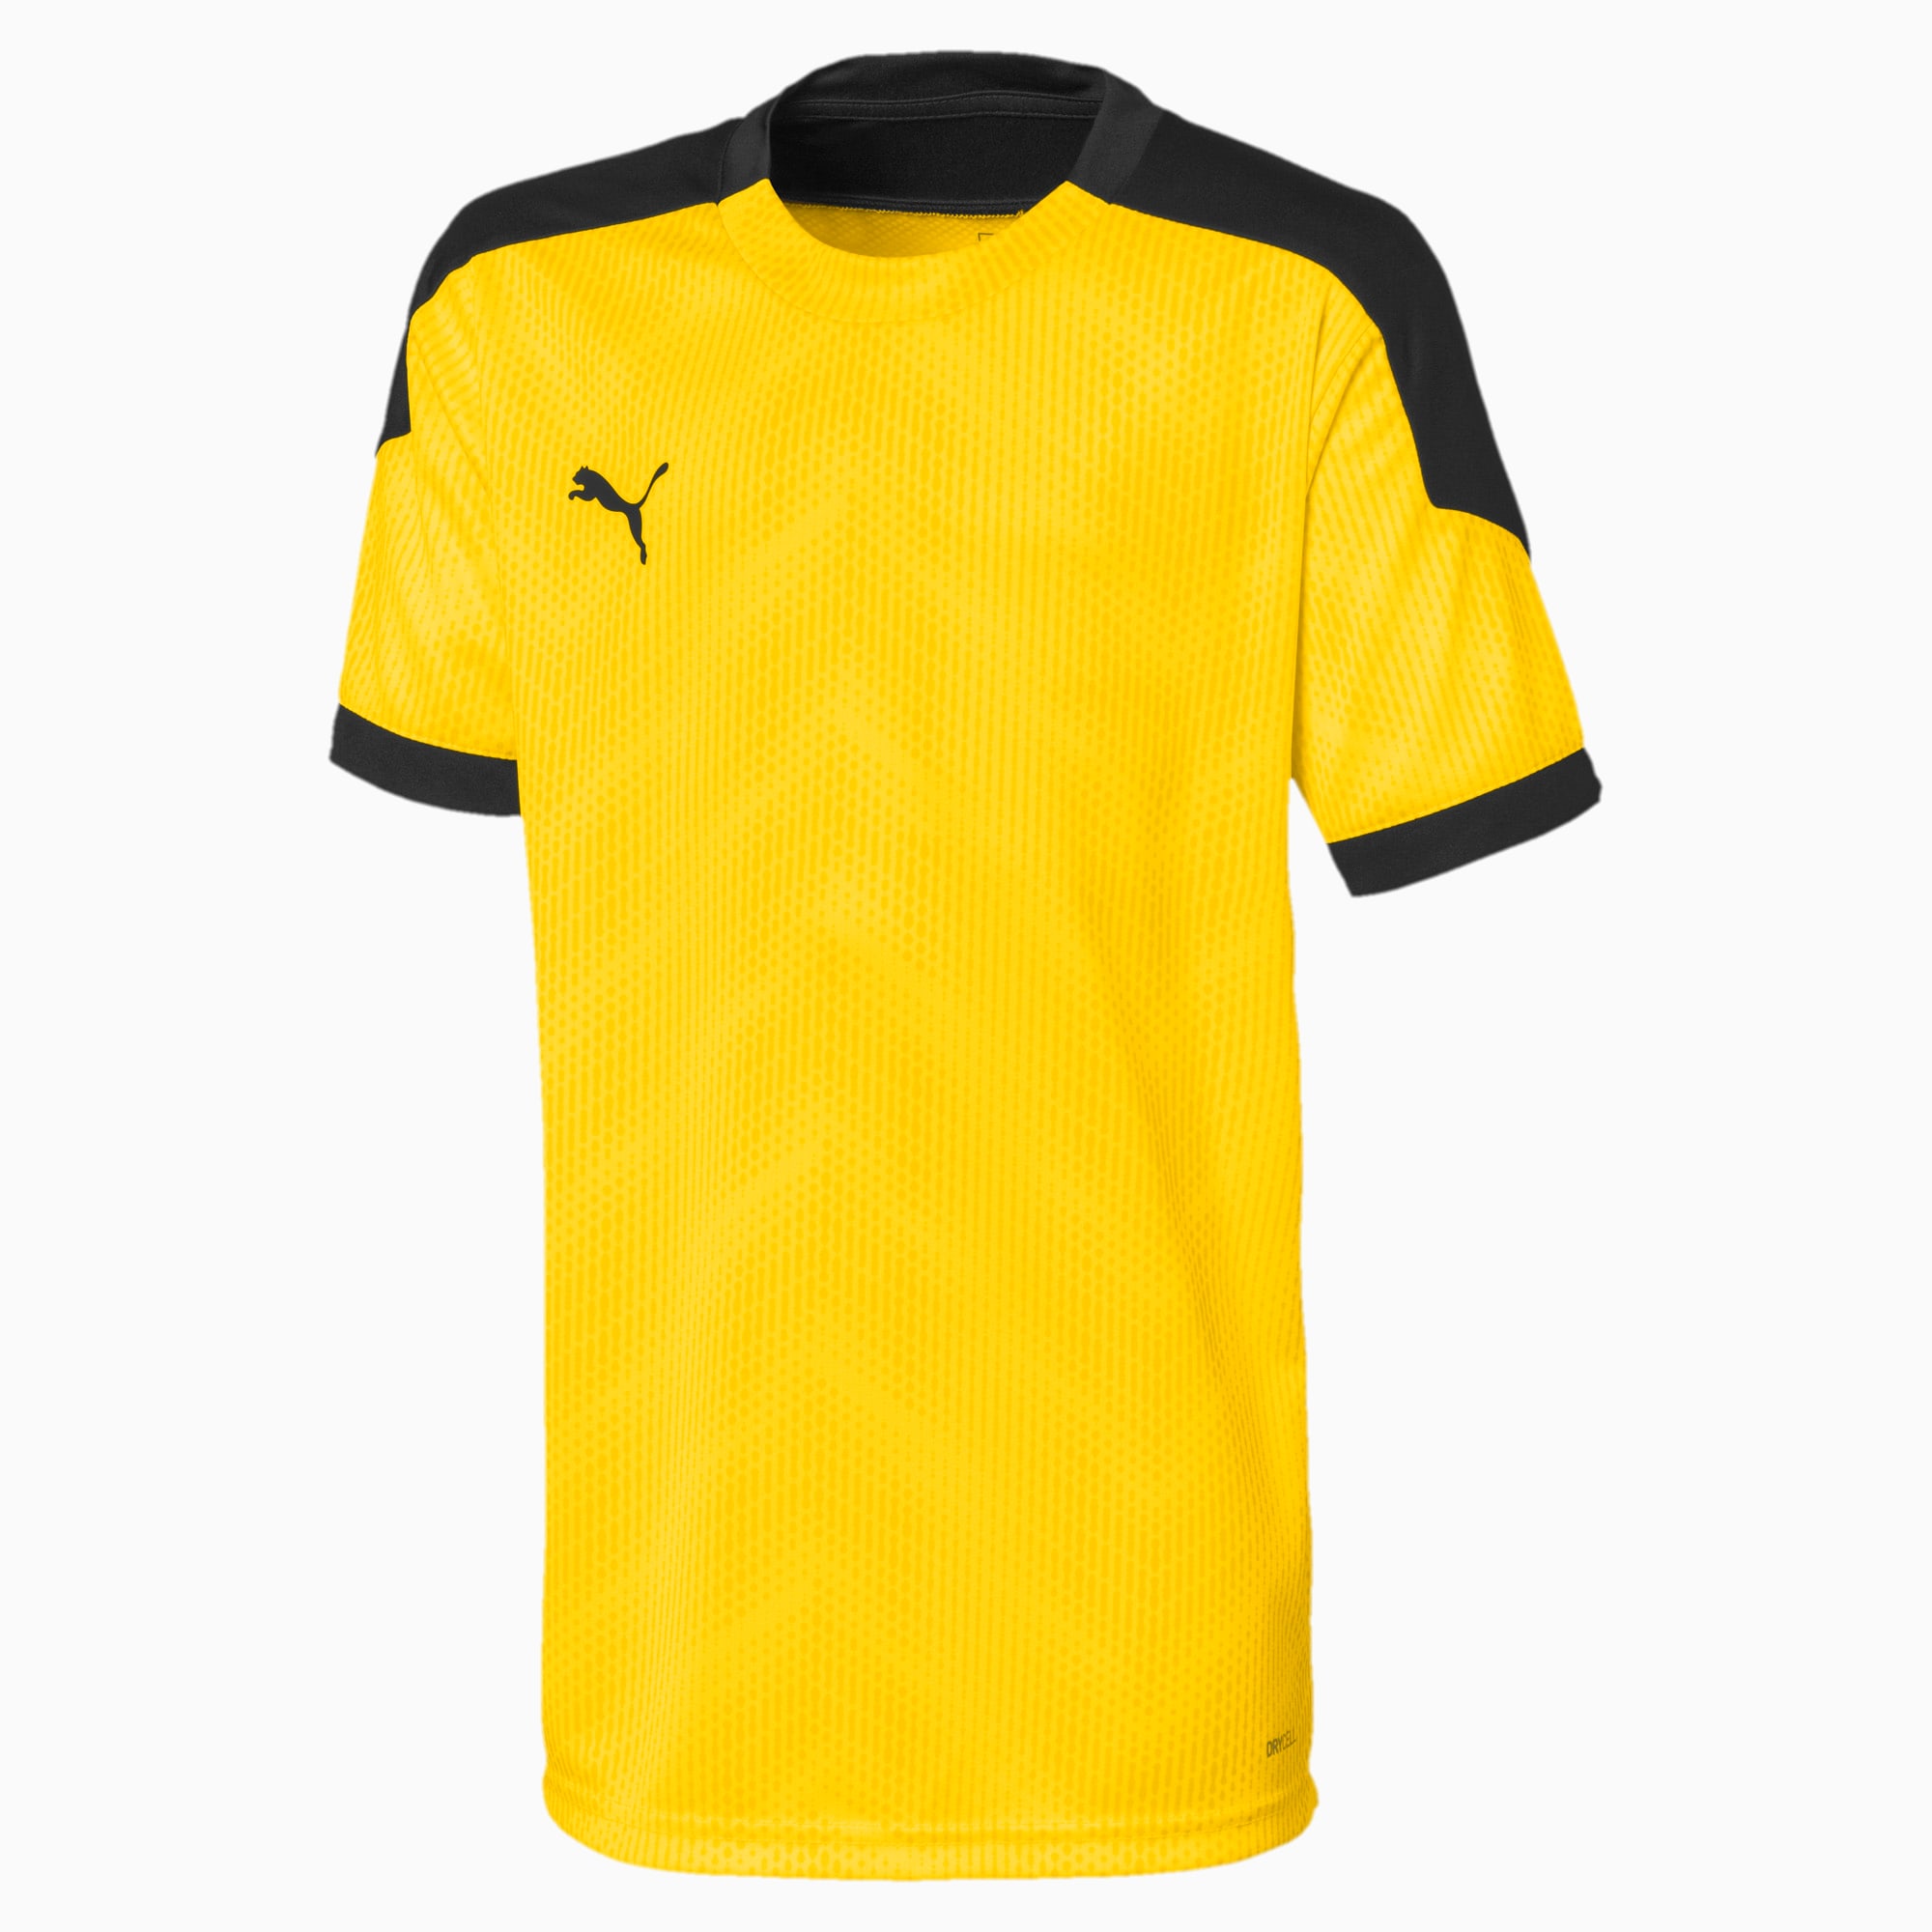 Image of PUMA ftblNXT Graphic Kinder Fußball T-Shirt | Mit Aucun | Gelb/Schwarz | Größe: 116